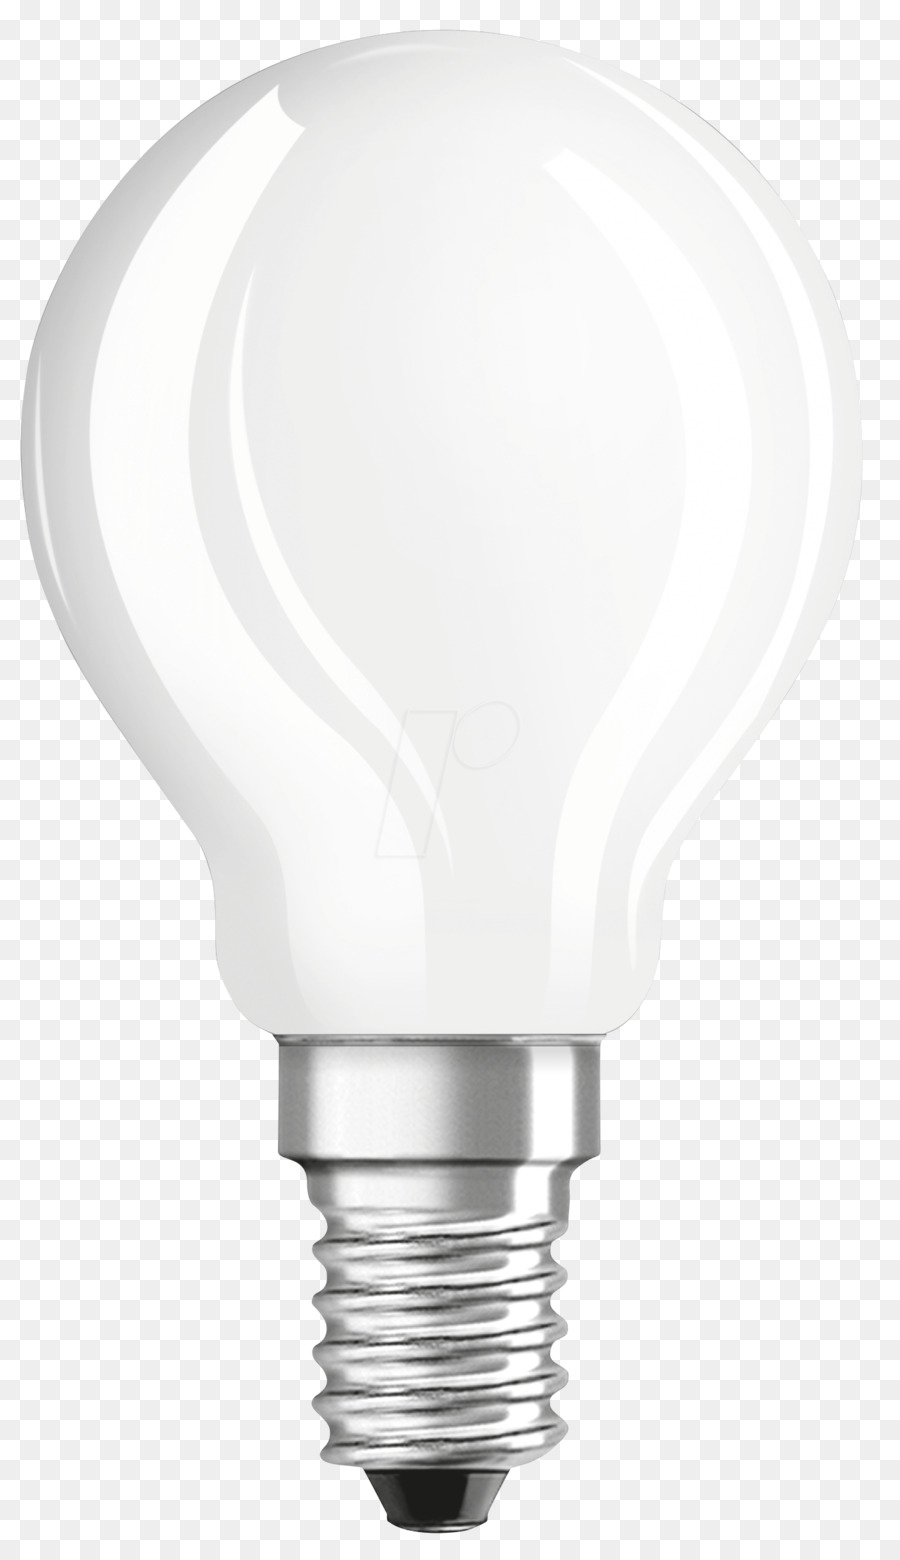 LED lamp Fassung Edison screw Osram Lightbulb socket - LED png download - 1376*2378 - Free Transparent LED Lamp png Download.